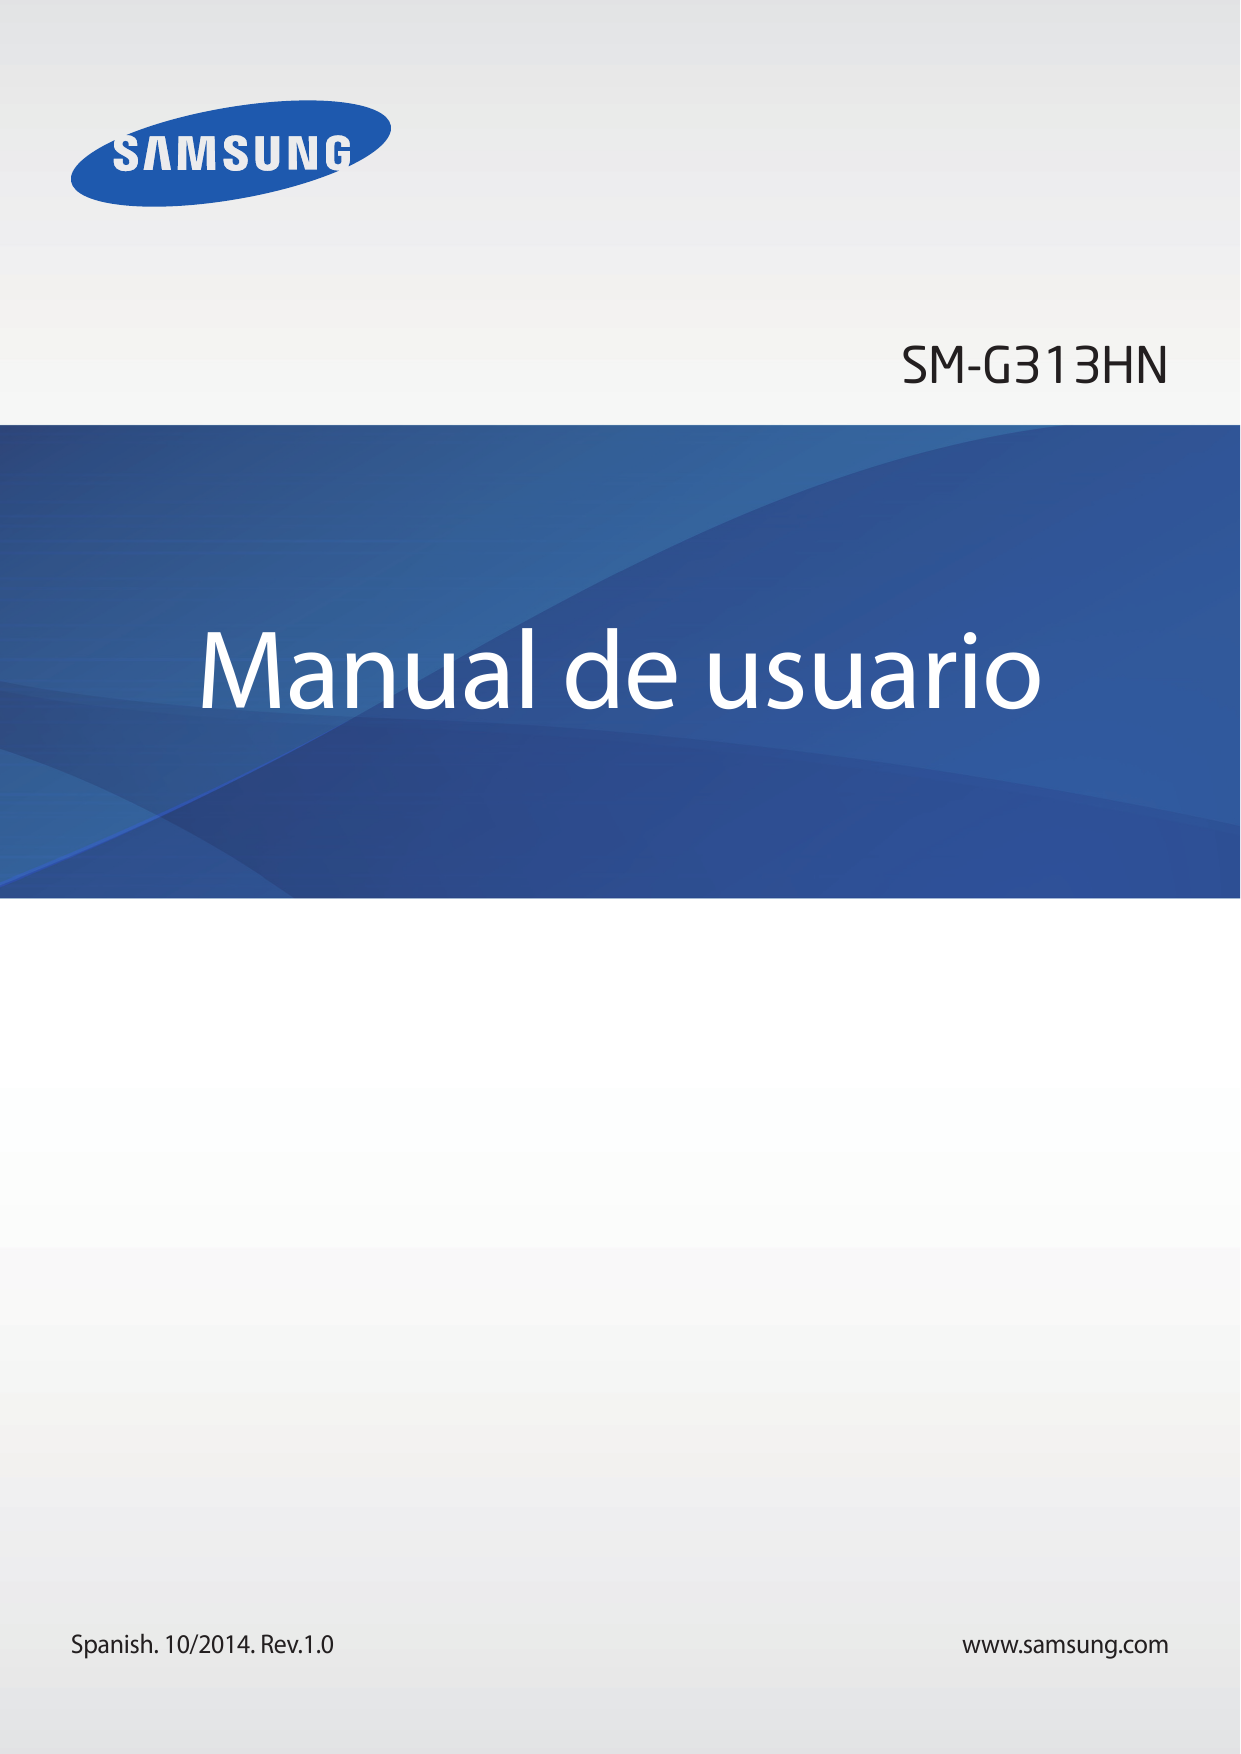 SM-G313HNManual de usuarioSpanish. 10/2014. Rev.1.0www.samsung.com